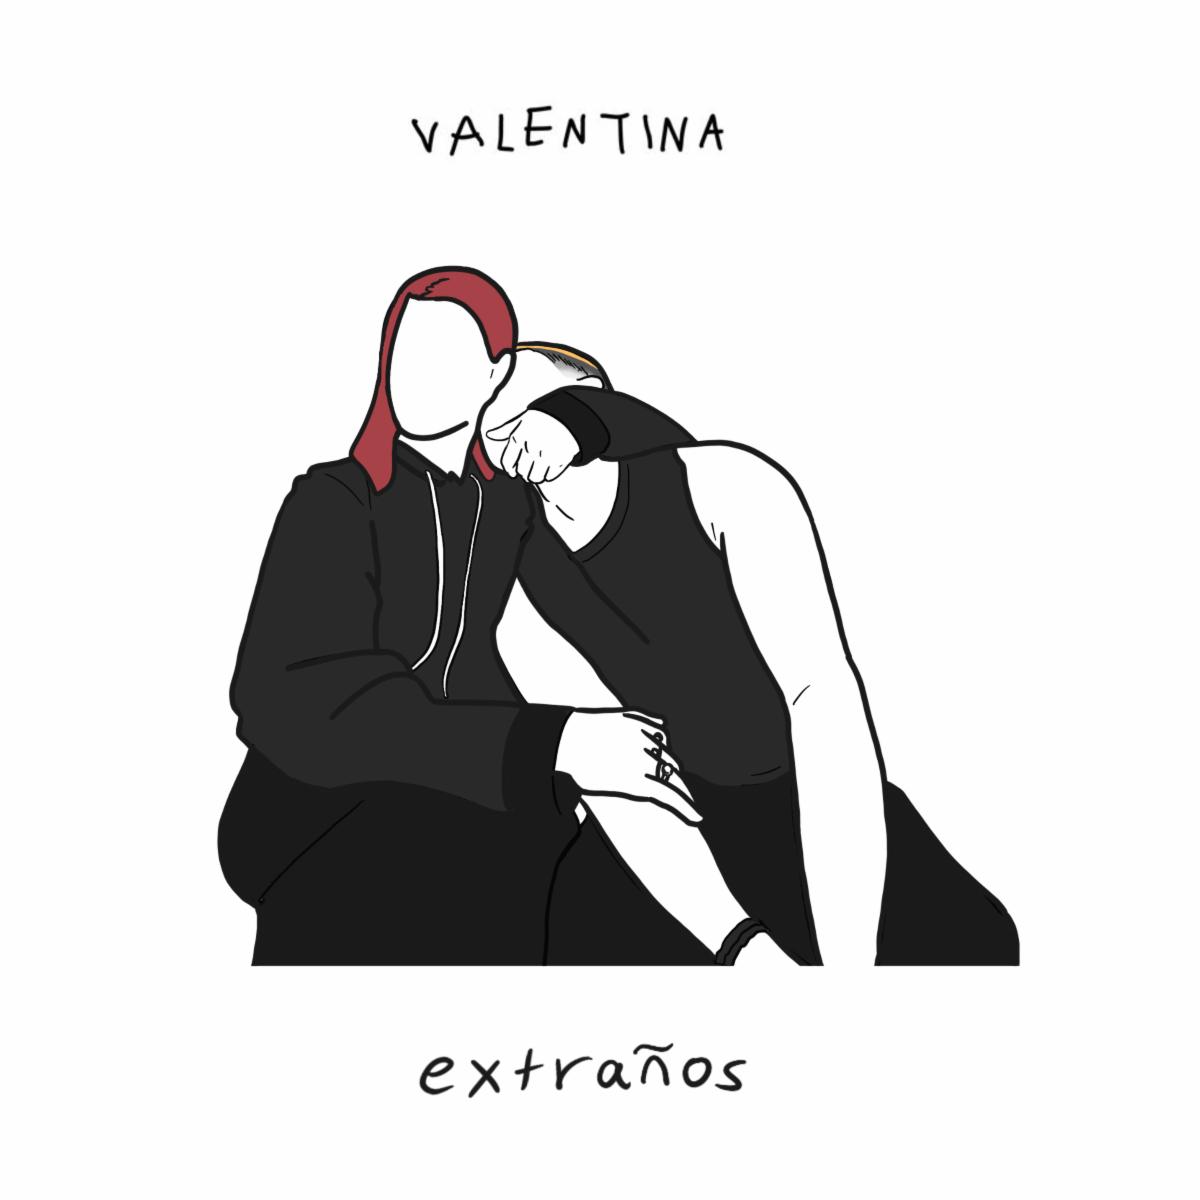 VALENTINA lanza nuevo tema “Extraños”